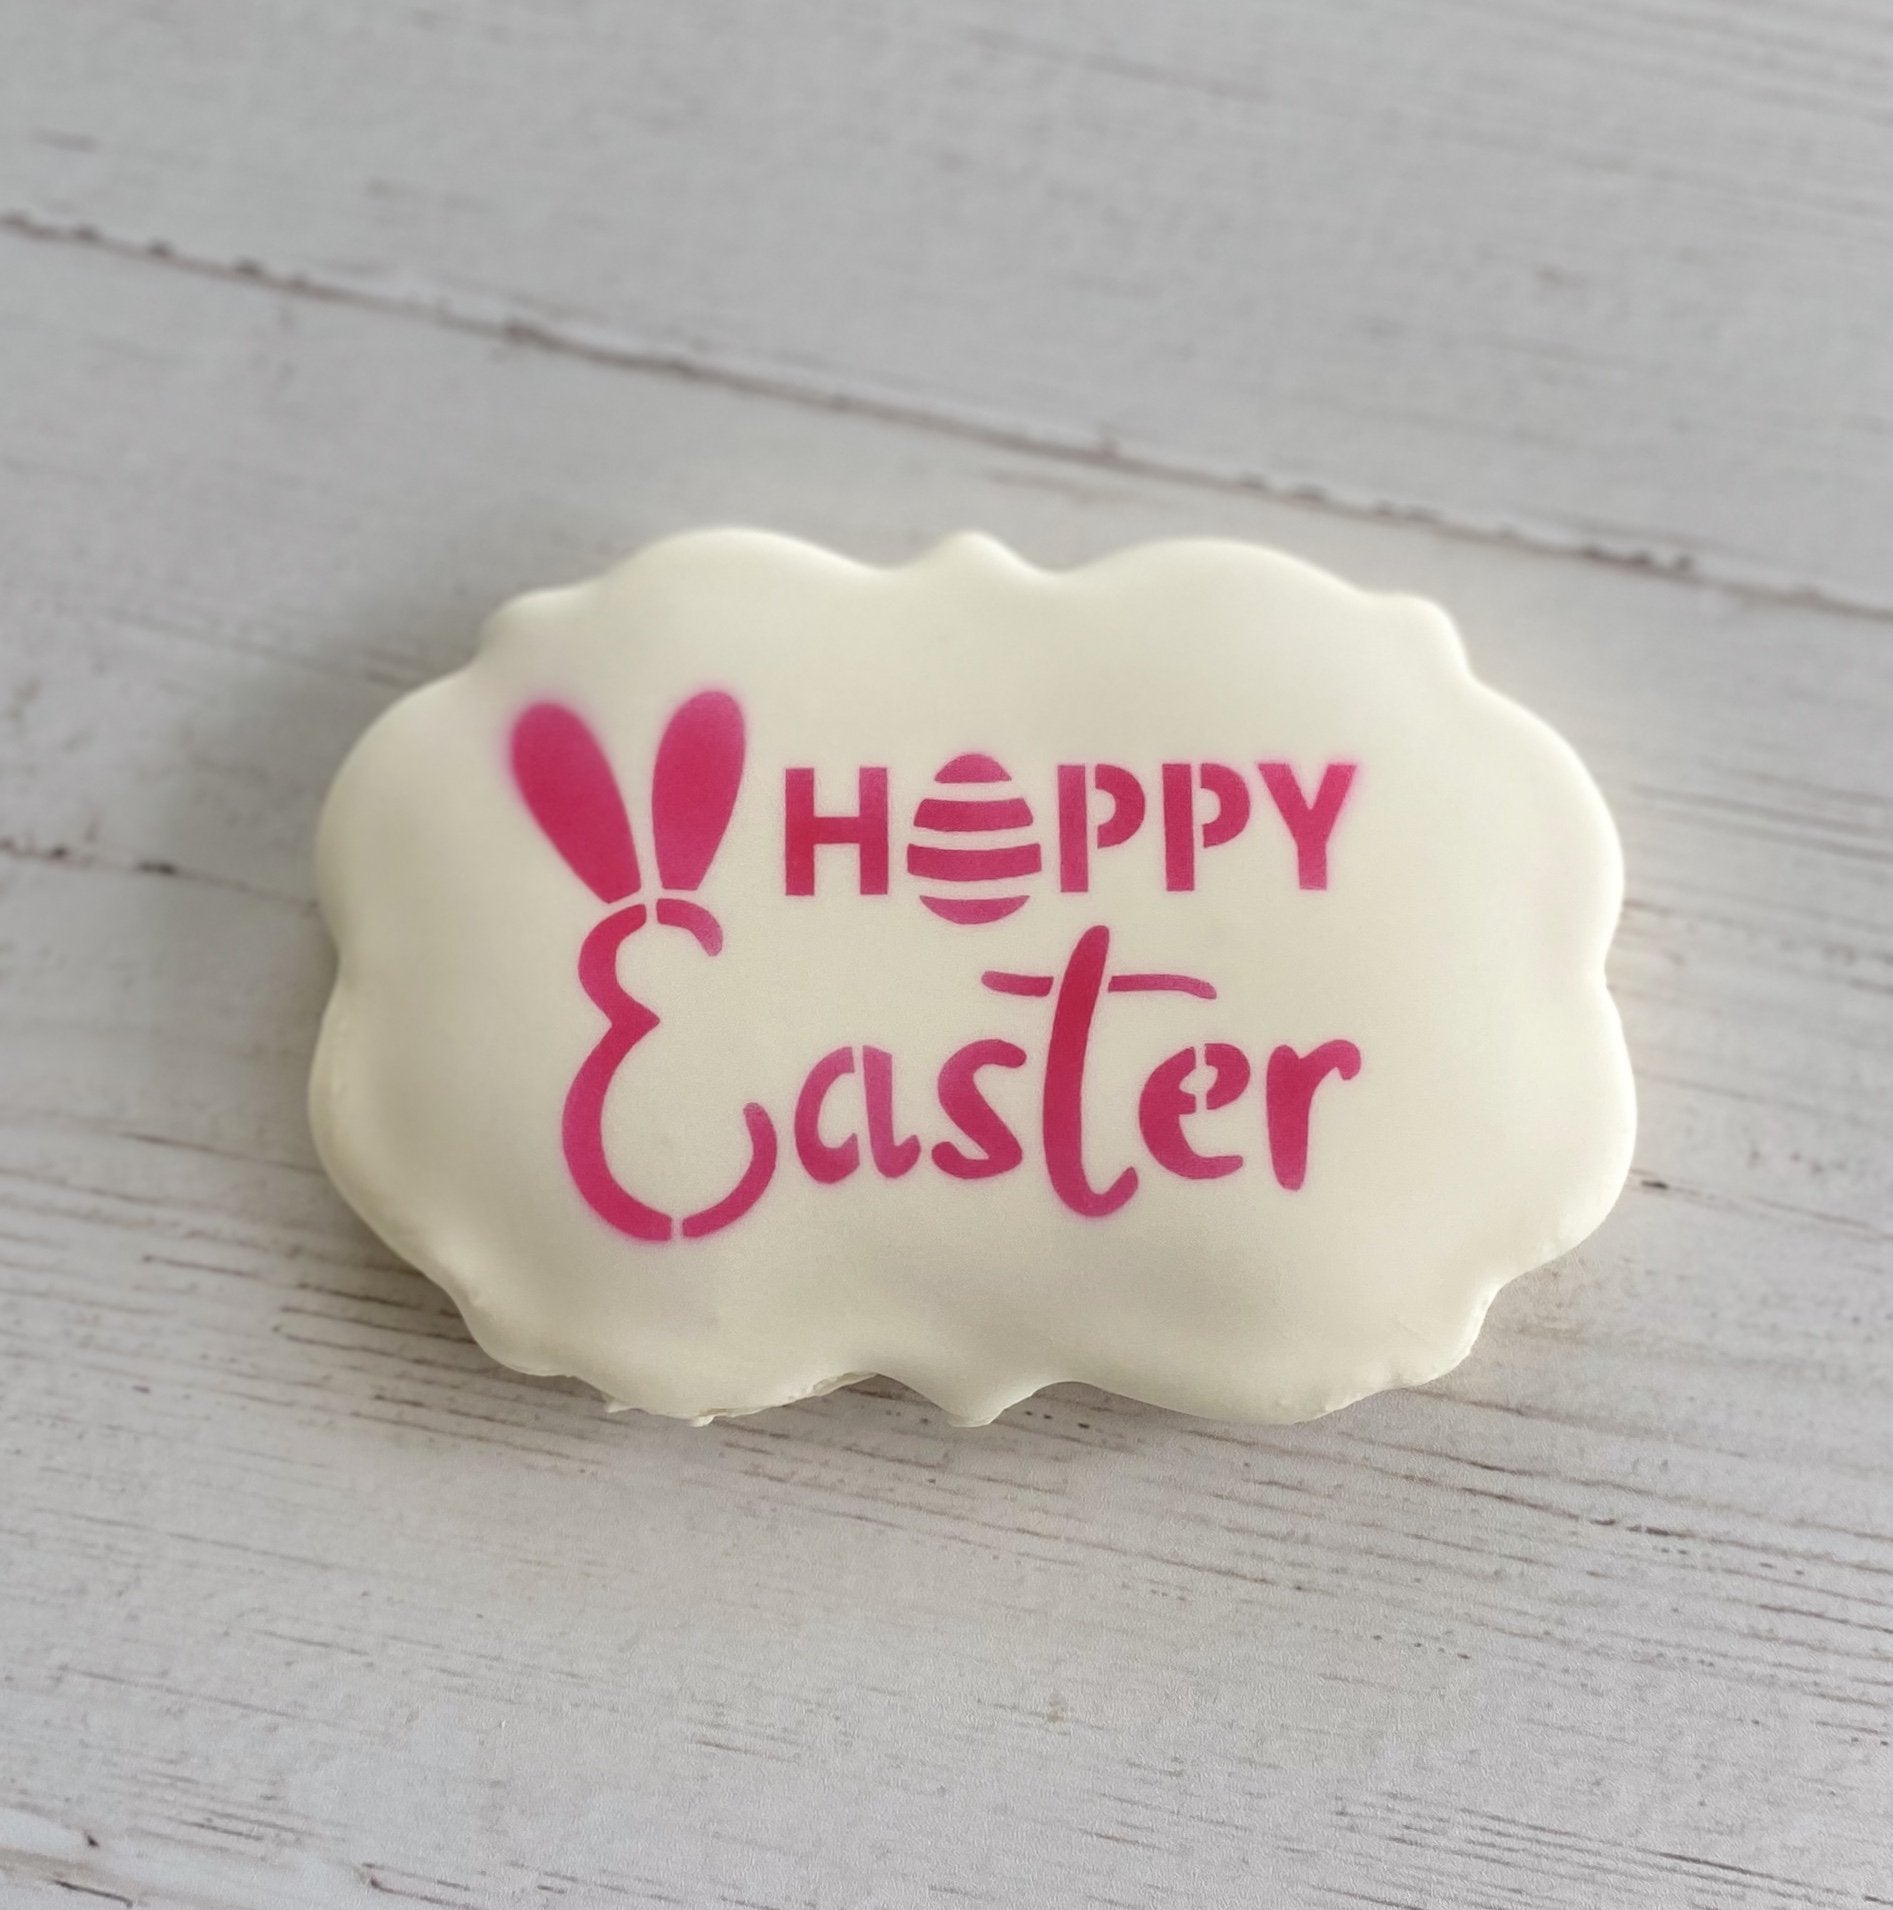 Hoppy Easter Cookie Stencil bakeartstencil